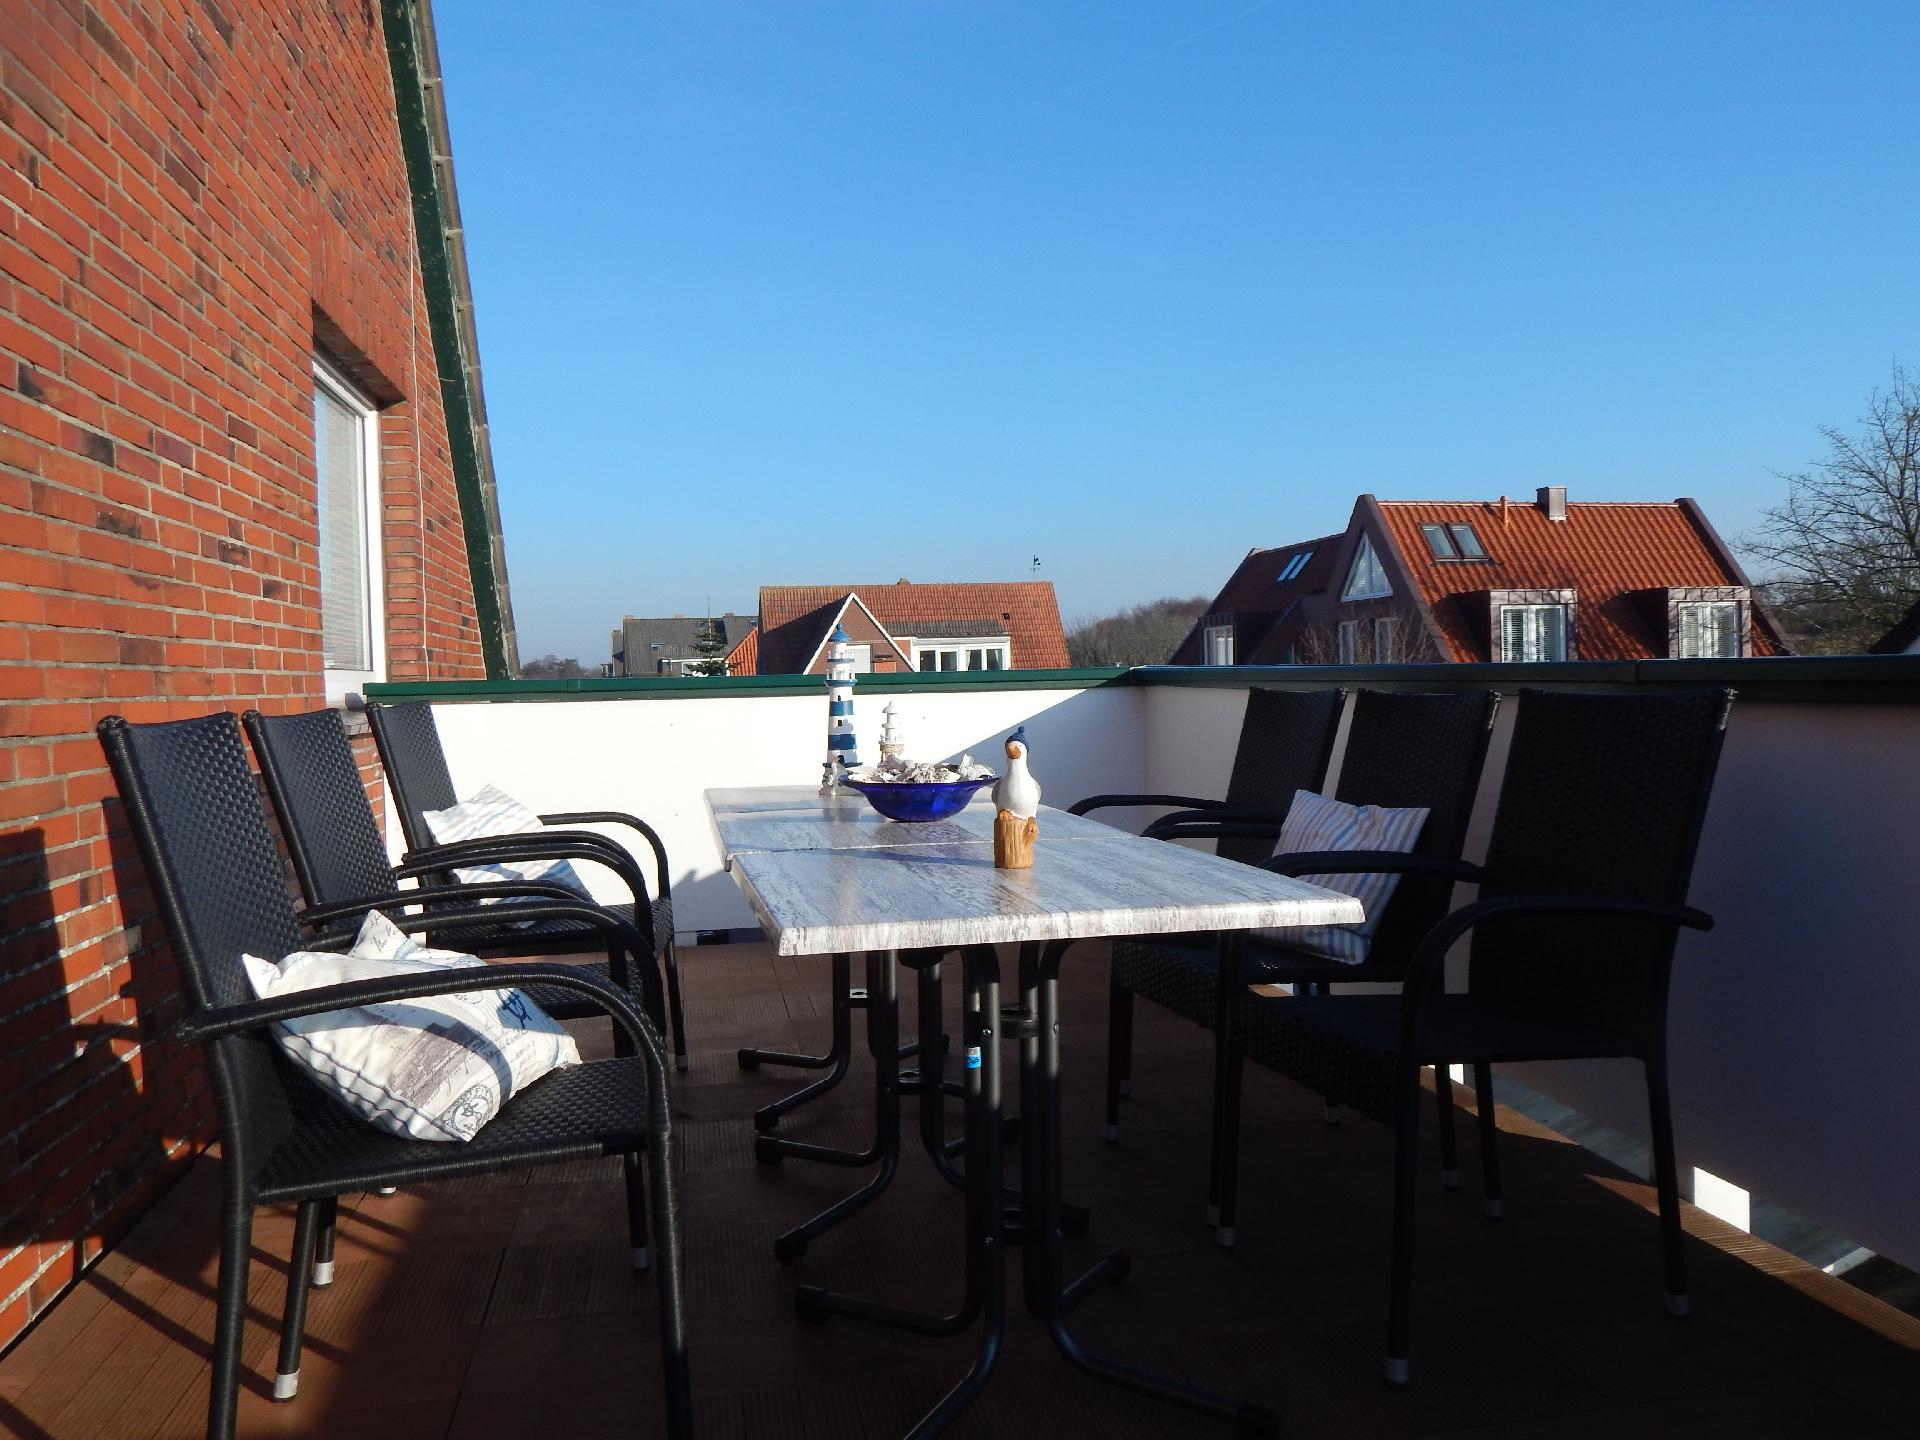 Ferienwohnung in ruhiger Lage mit Dachterrasse  in Ostfriesland